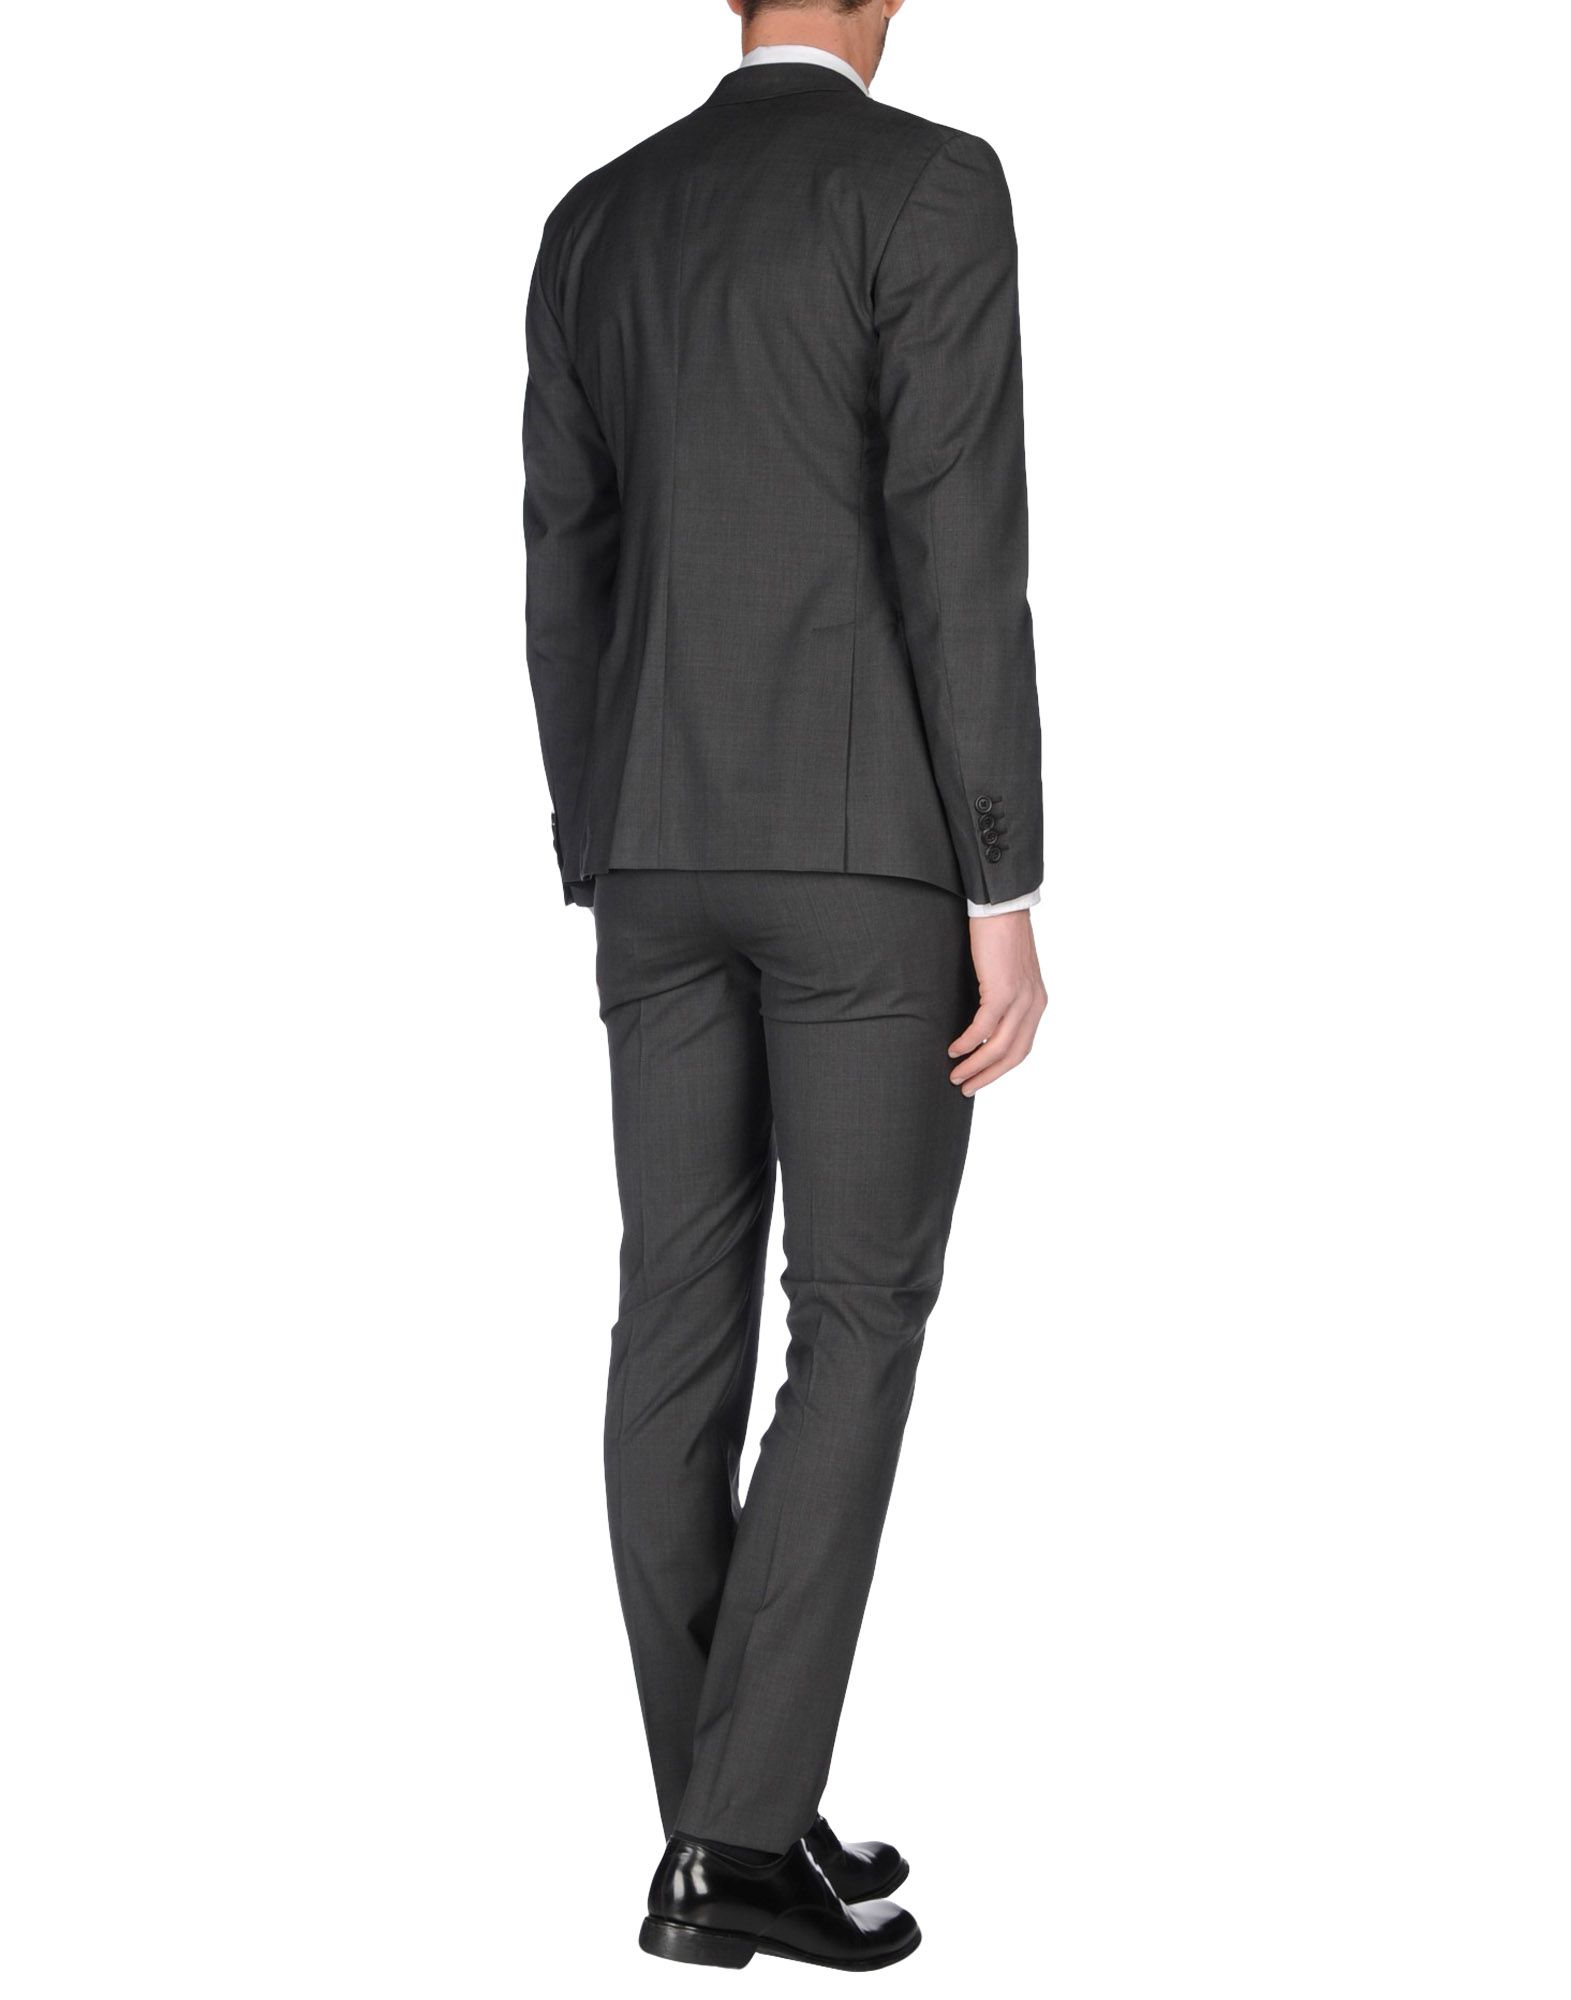 Lyst - Prada Suit in Black for Men